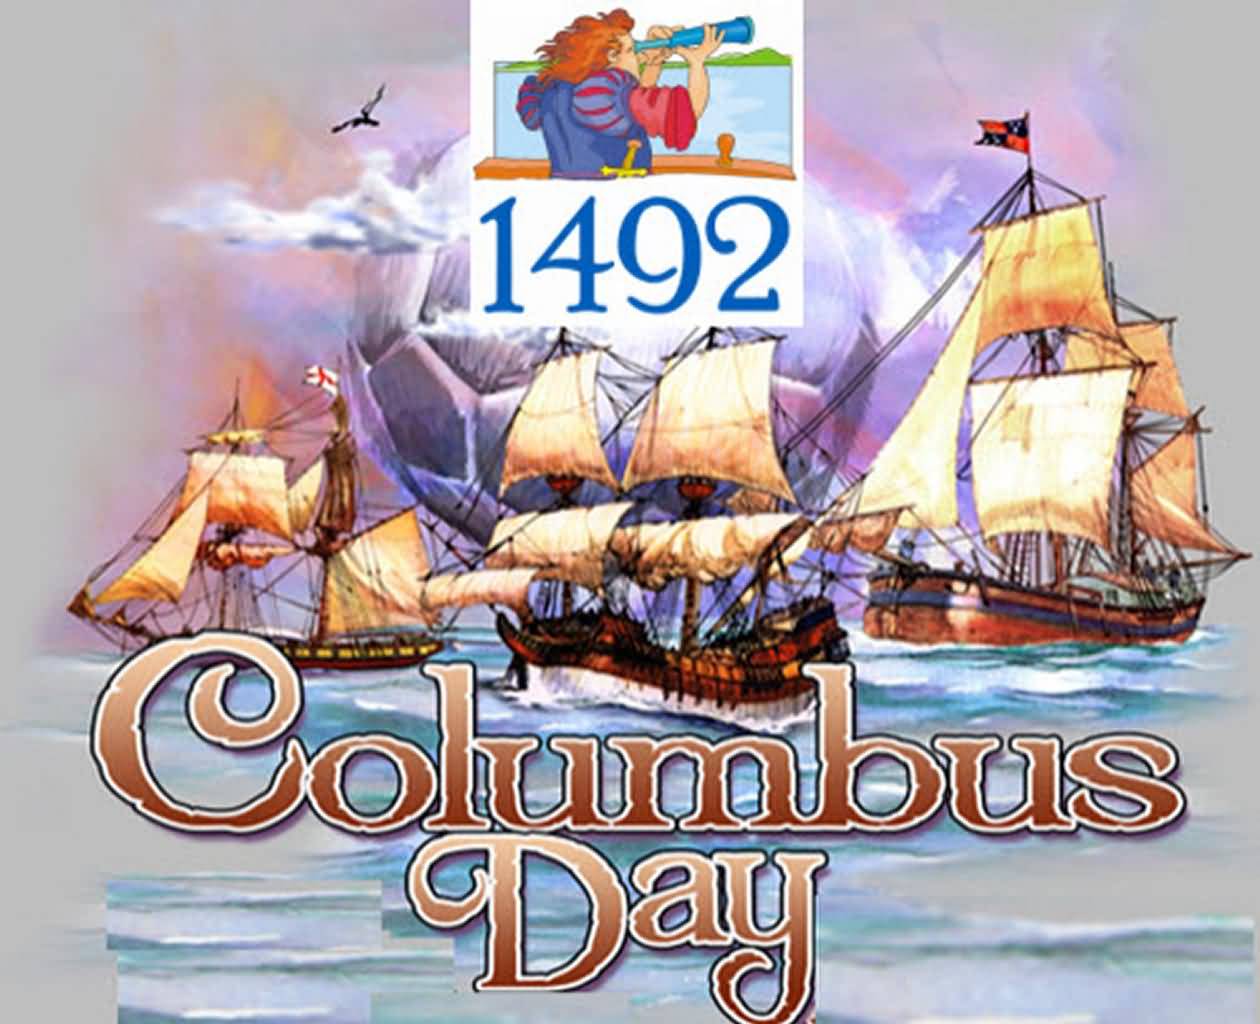 Happy Columbus Day 1492